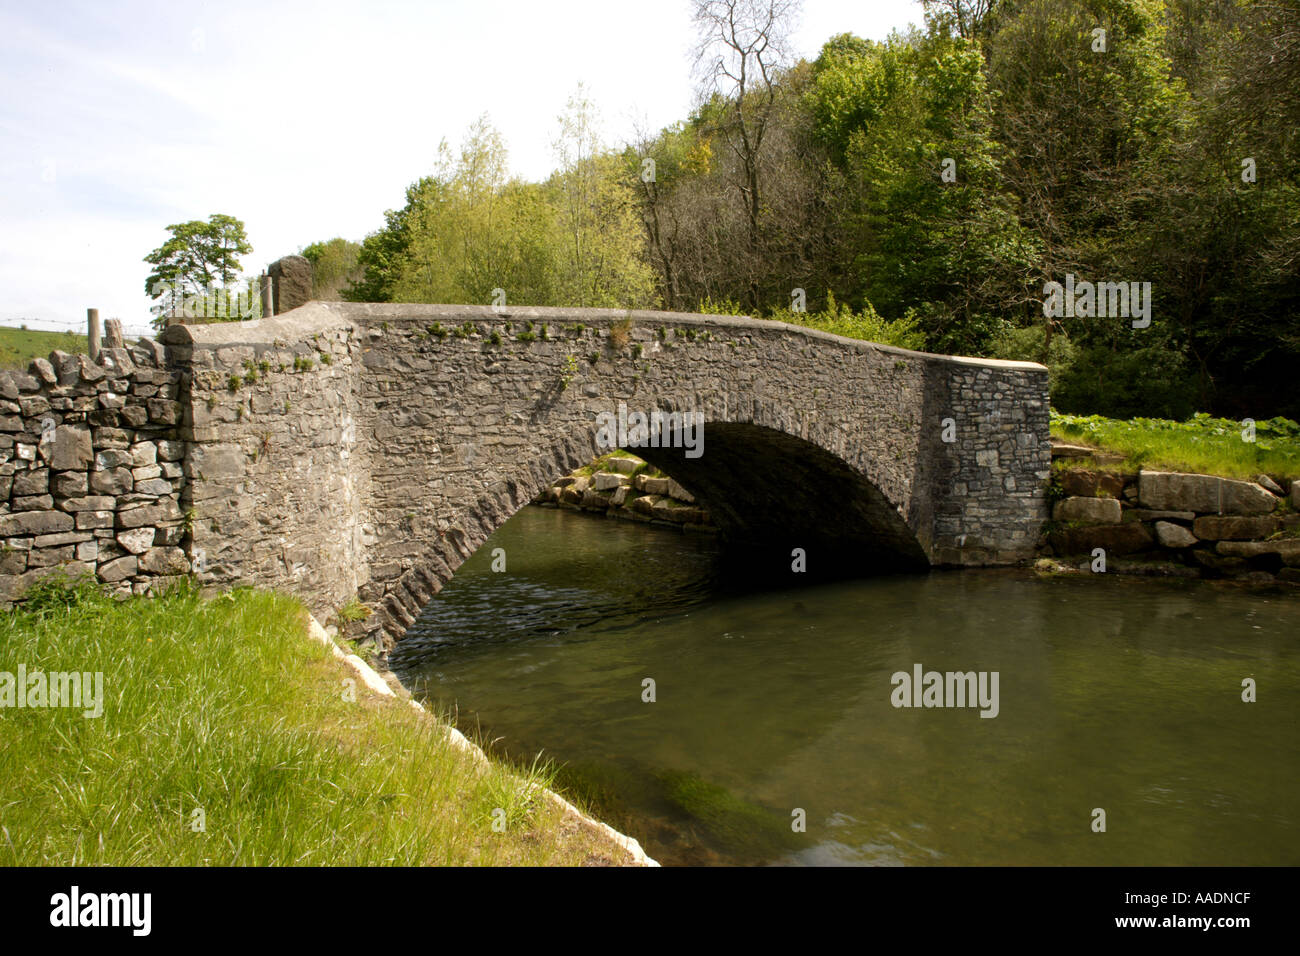 Pont sur la rivière Wye près d'Ashford dans l'eau Derbyshire Royaume-Uni Banque D'Images